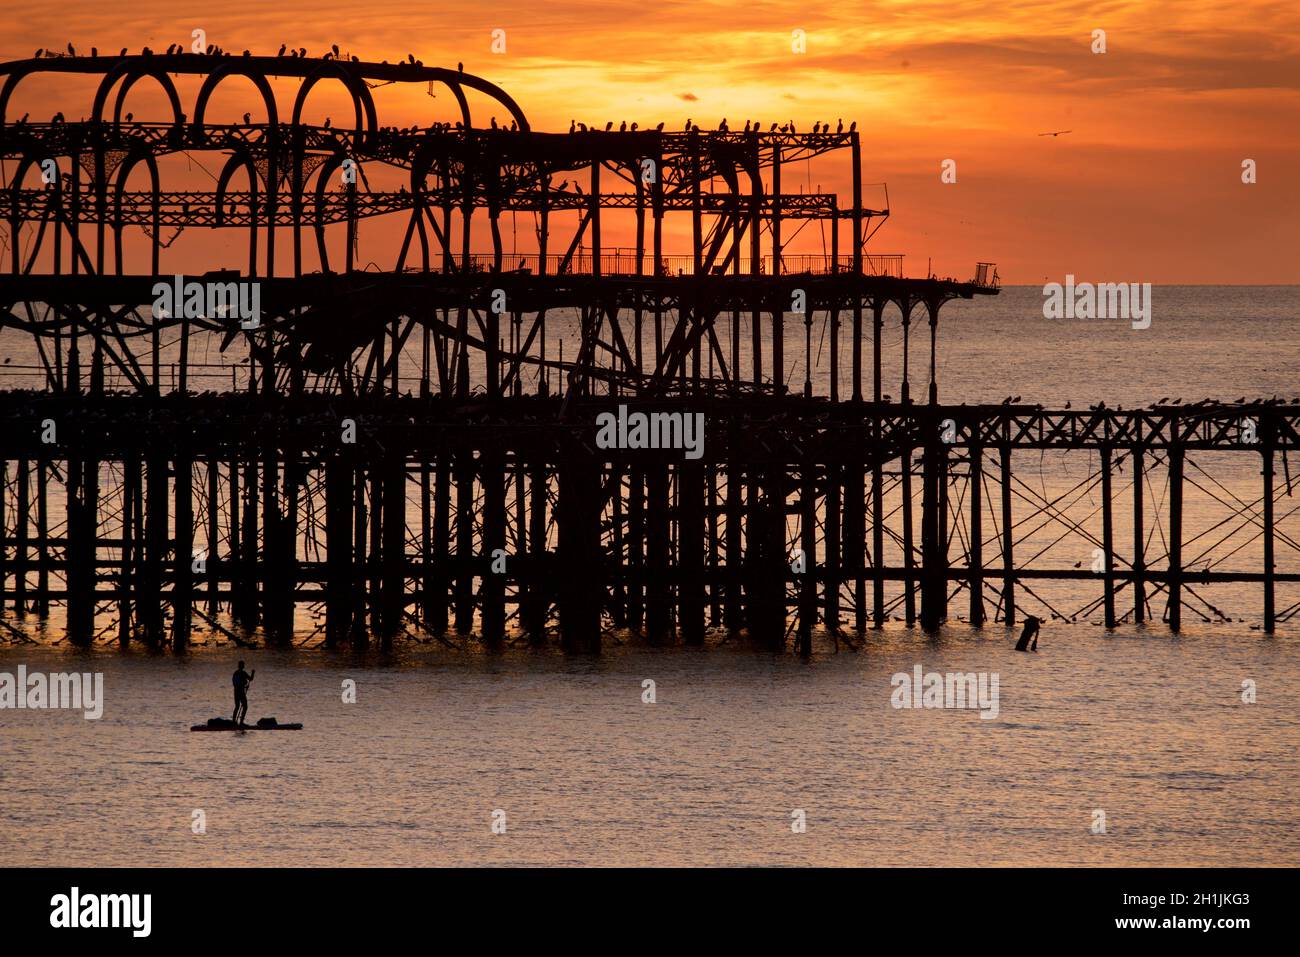 Pédalo silhoueté sur la jetée ouest abandonnée au coucher du soleil, Brighton, Angleterre.Construit en 1866 et fermé en 1975, le quai est toujours classé de catégorie I et un site bien connu. Banque D'Images